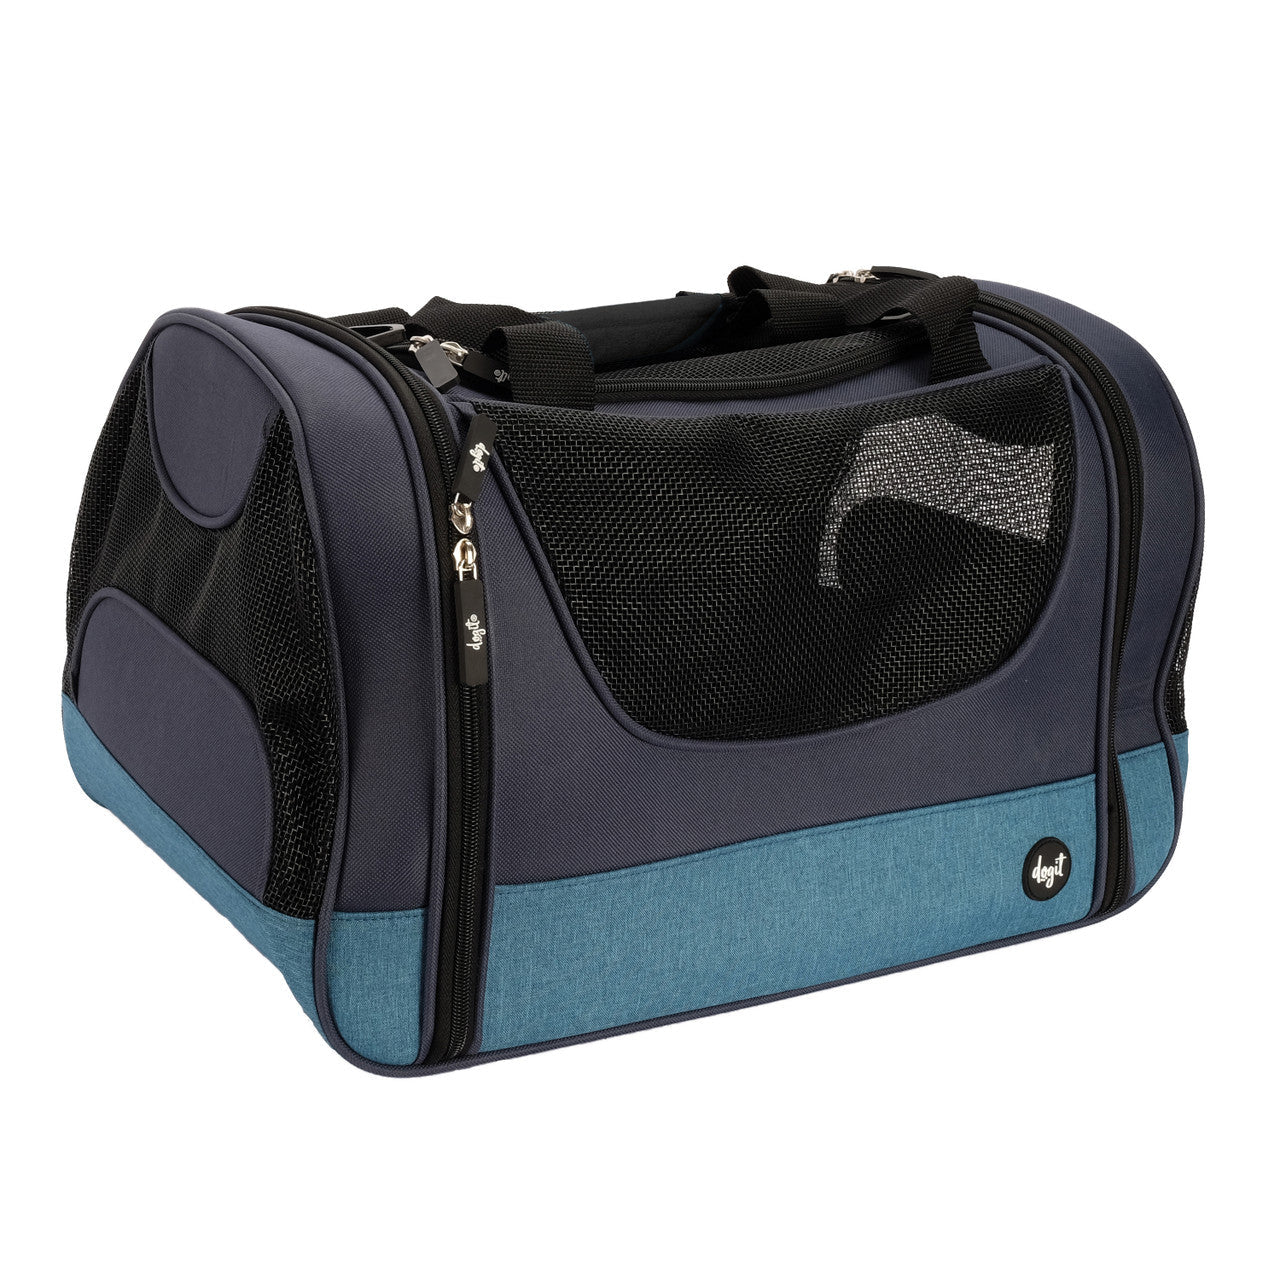 Dogit Explorer Tote Carry Bag, Blue/Navy Blue 022517775592